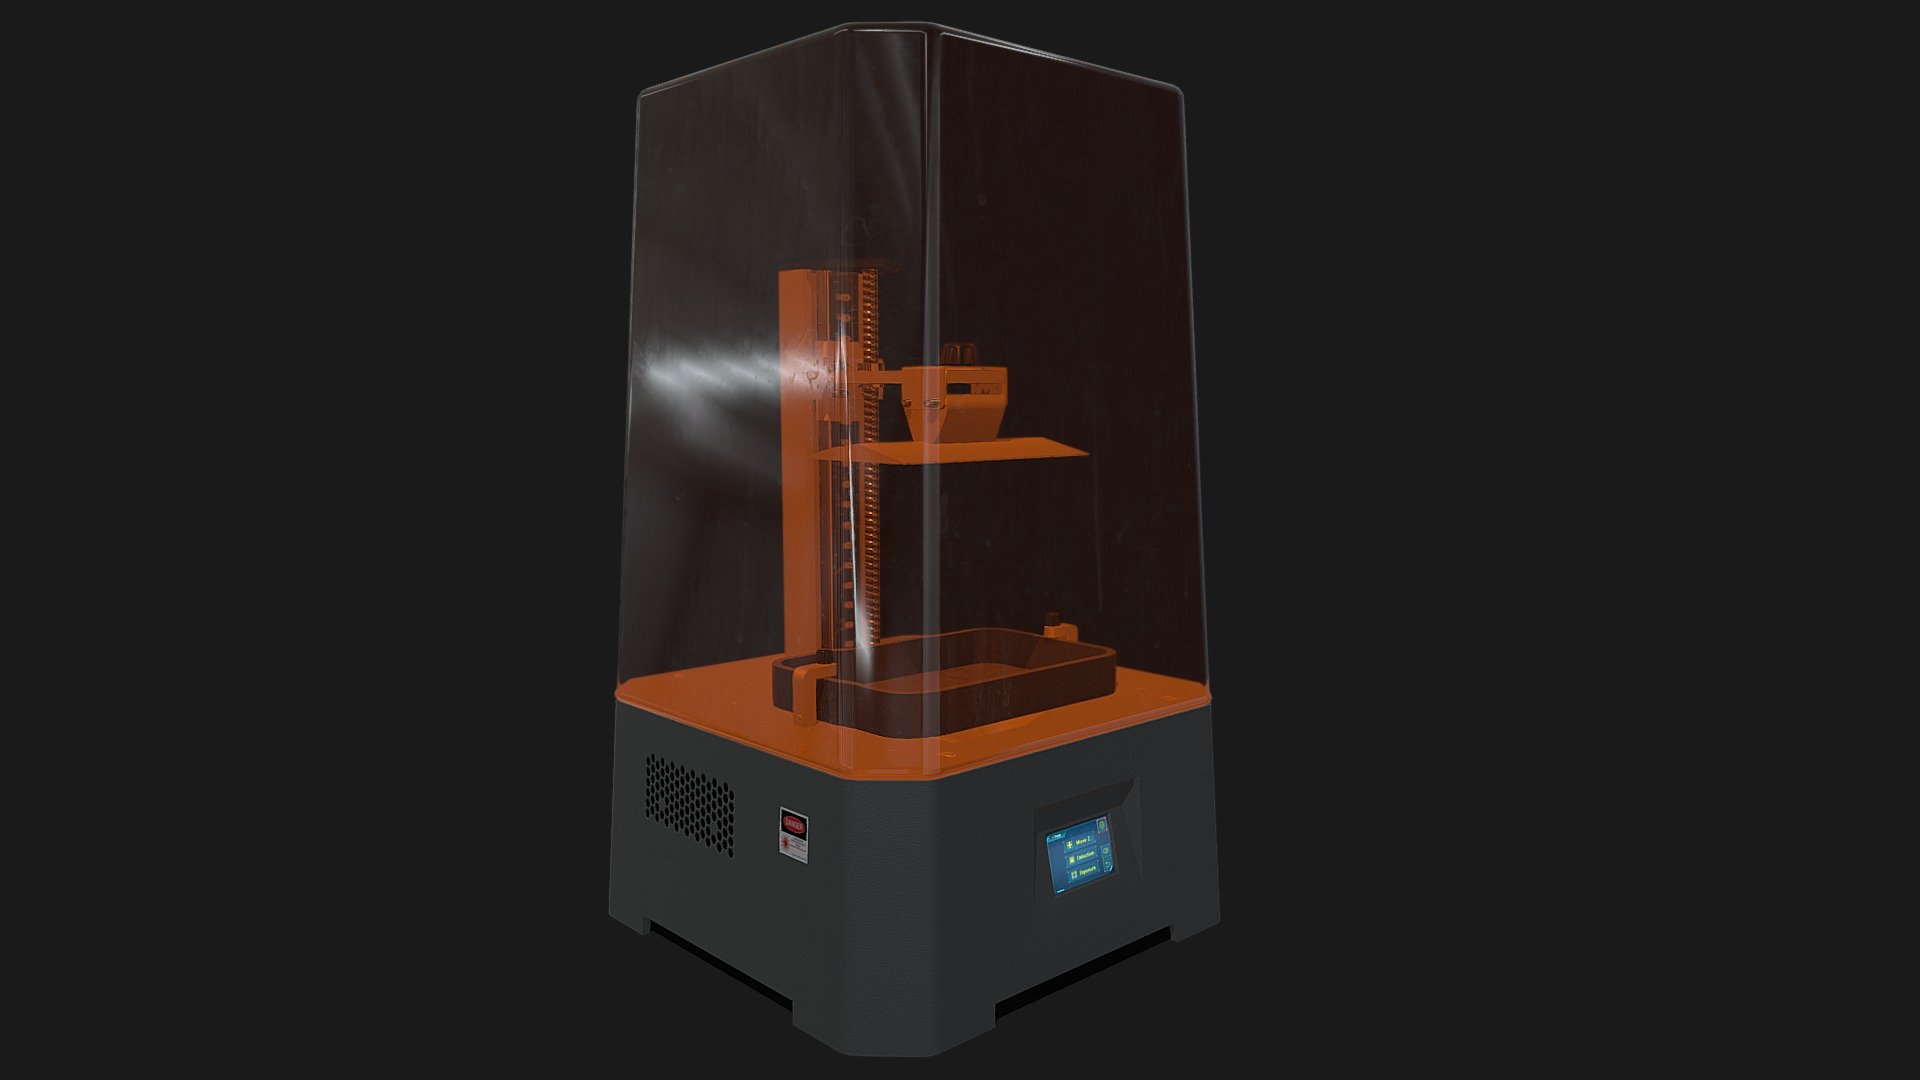 Resin (photopolymer) 3d printer - 3D model by evt22 3d model